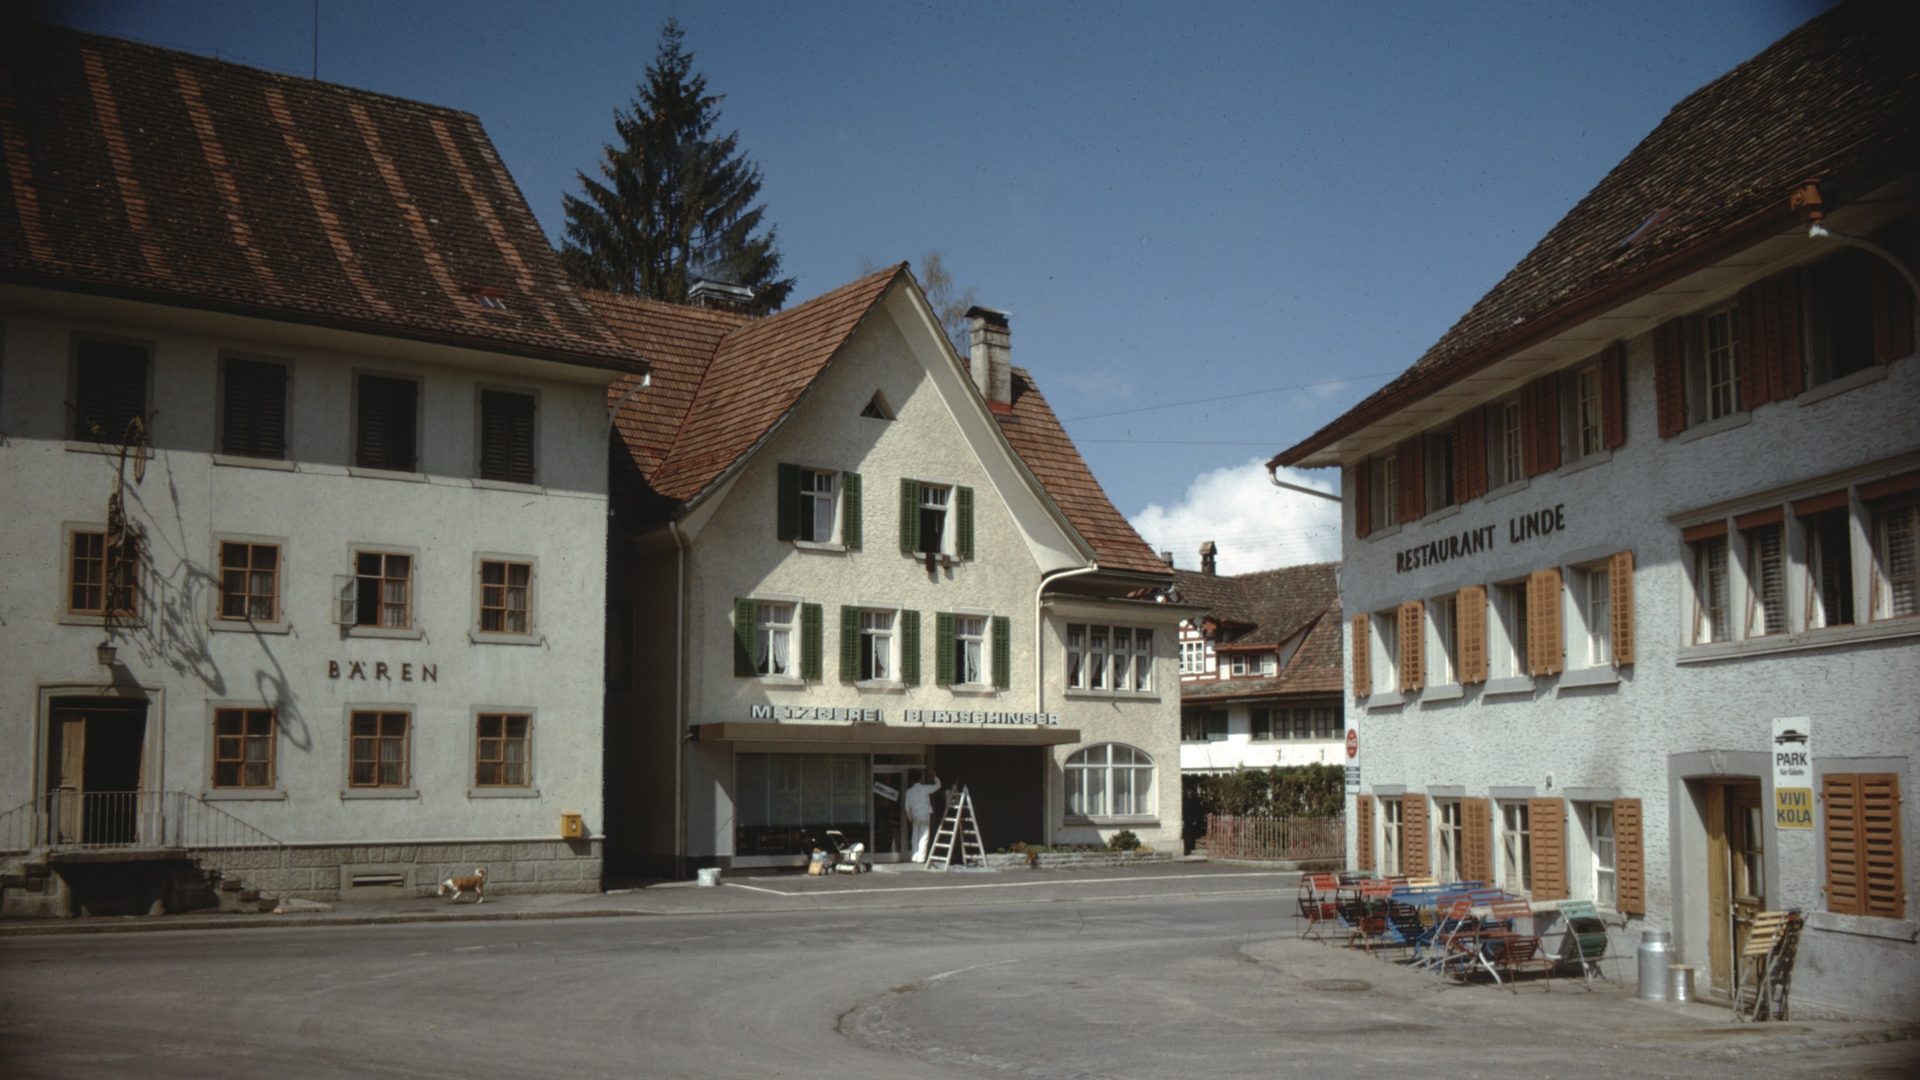 Der Dorfplatz ist das Herz von Bäretswil. Hier befinden sich die Restaurants Bären und Linde und die Dorfmetzg.